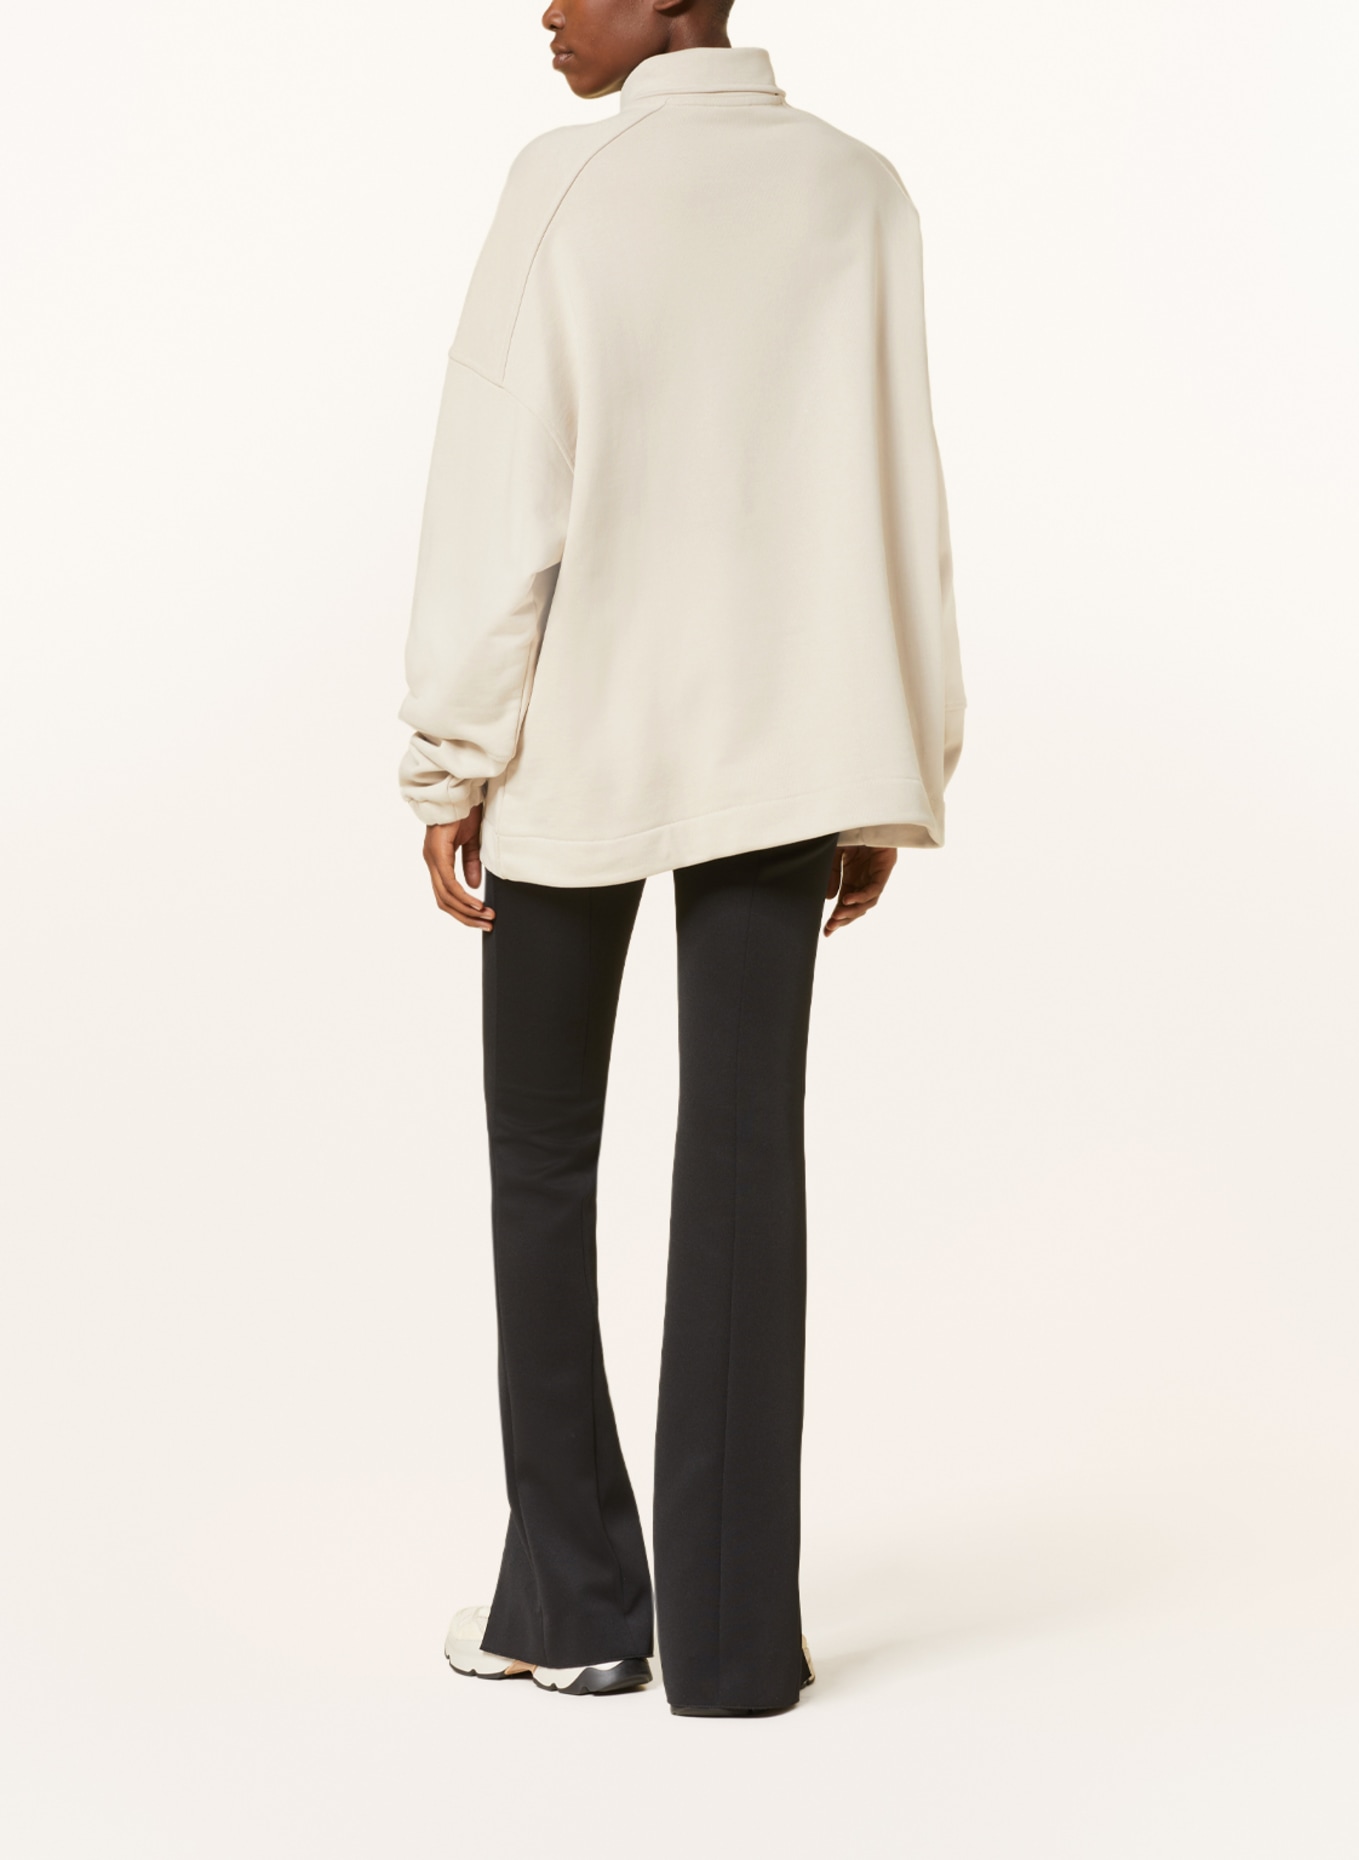 KARO KAUER Half-zip sweater in sweatshirt fabric, Color: BEIGE (Image 3)